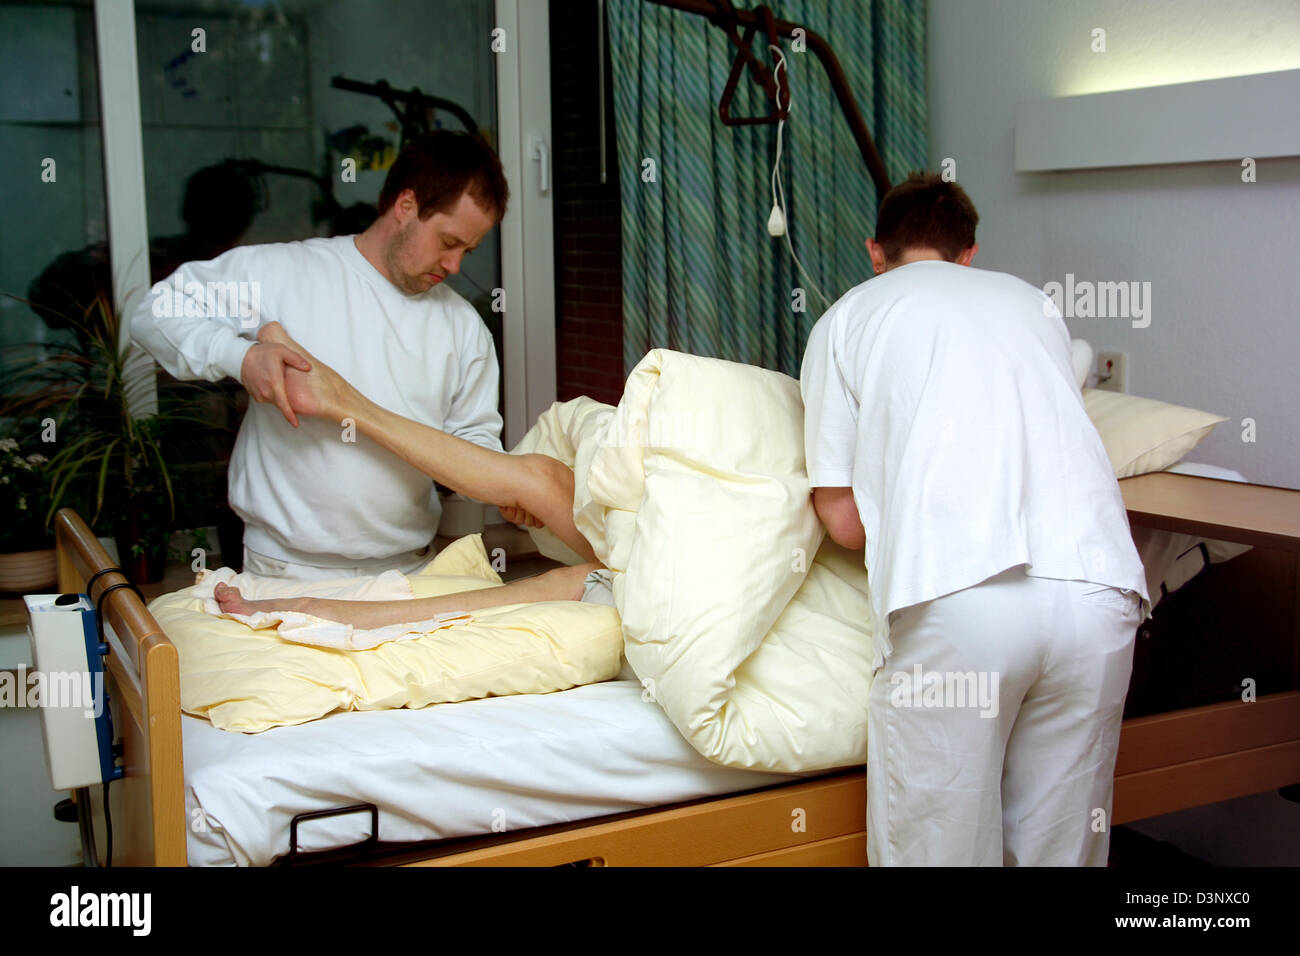 (Afp) Deux soignants pour les personnes âgées montré au cours d'une séance de physiothérapie avec une femme de 97 ans au lit à l'Erna-David-Seniorenzentrum' à Dortmund, en Allemagne, le 11 mars 2005. Photo : Klaus Rose Banque D'Images